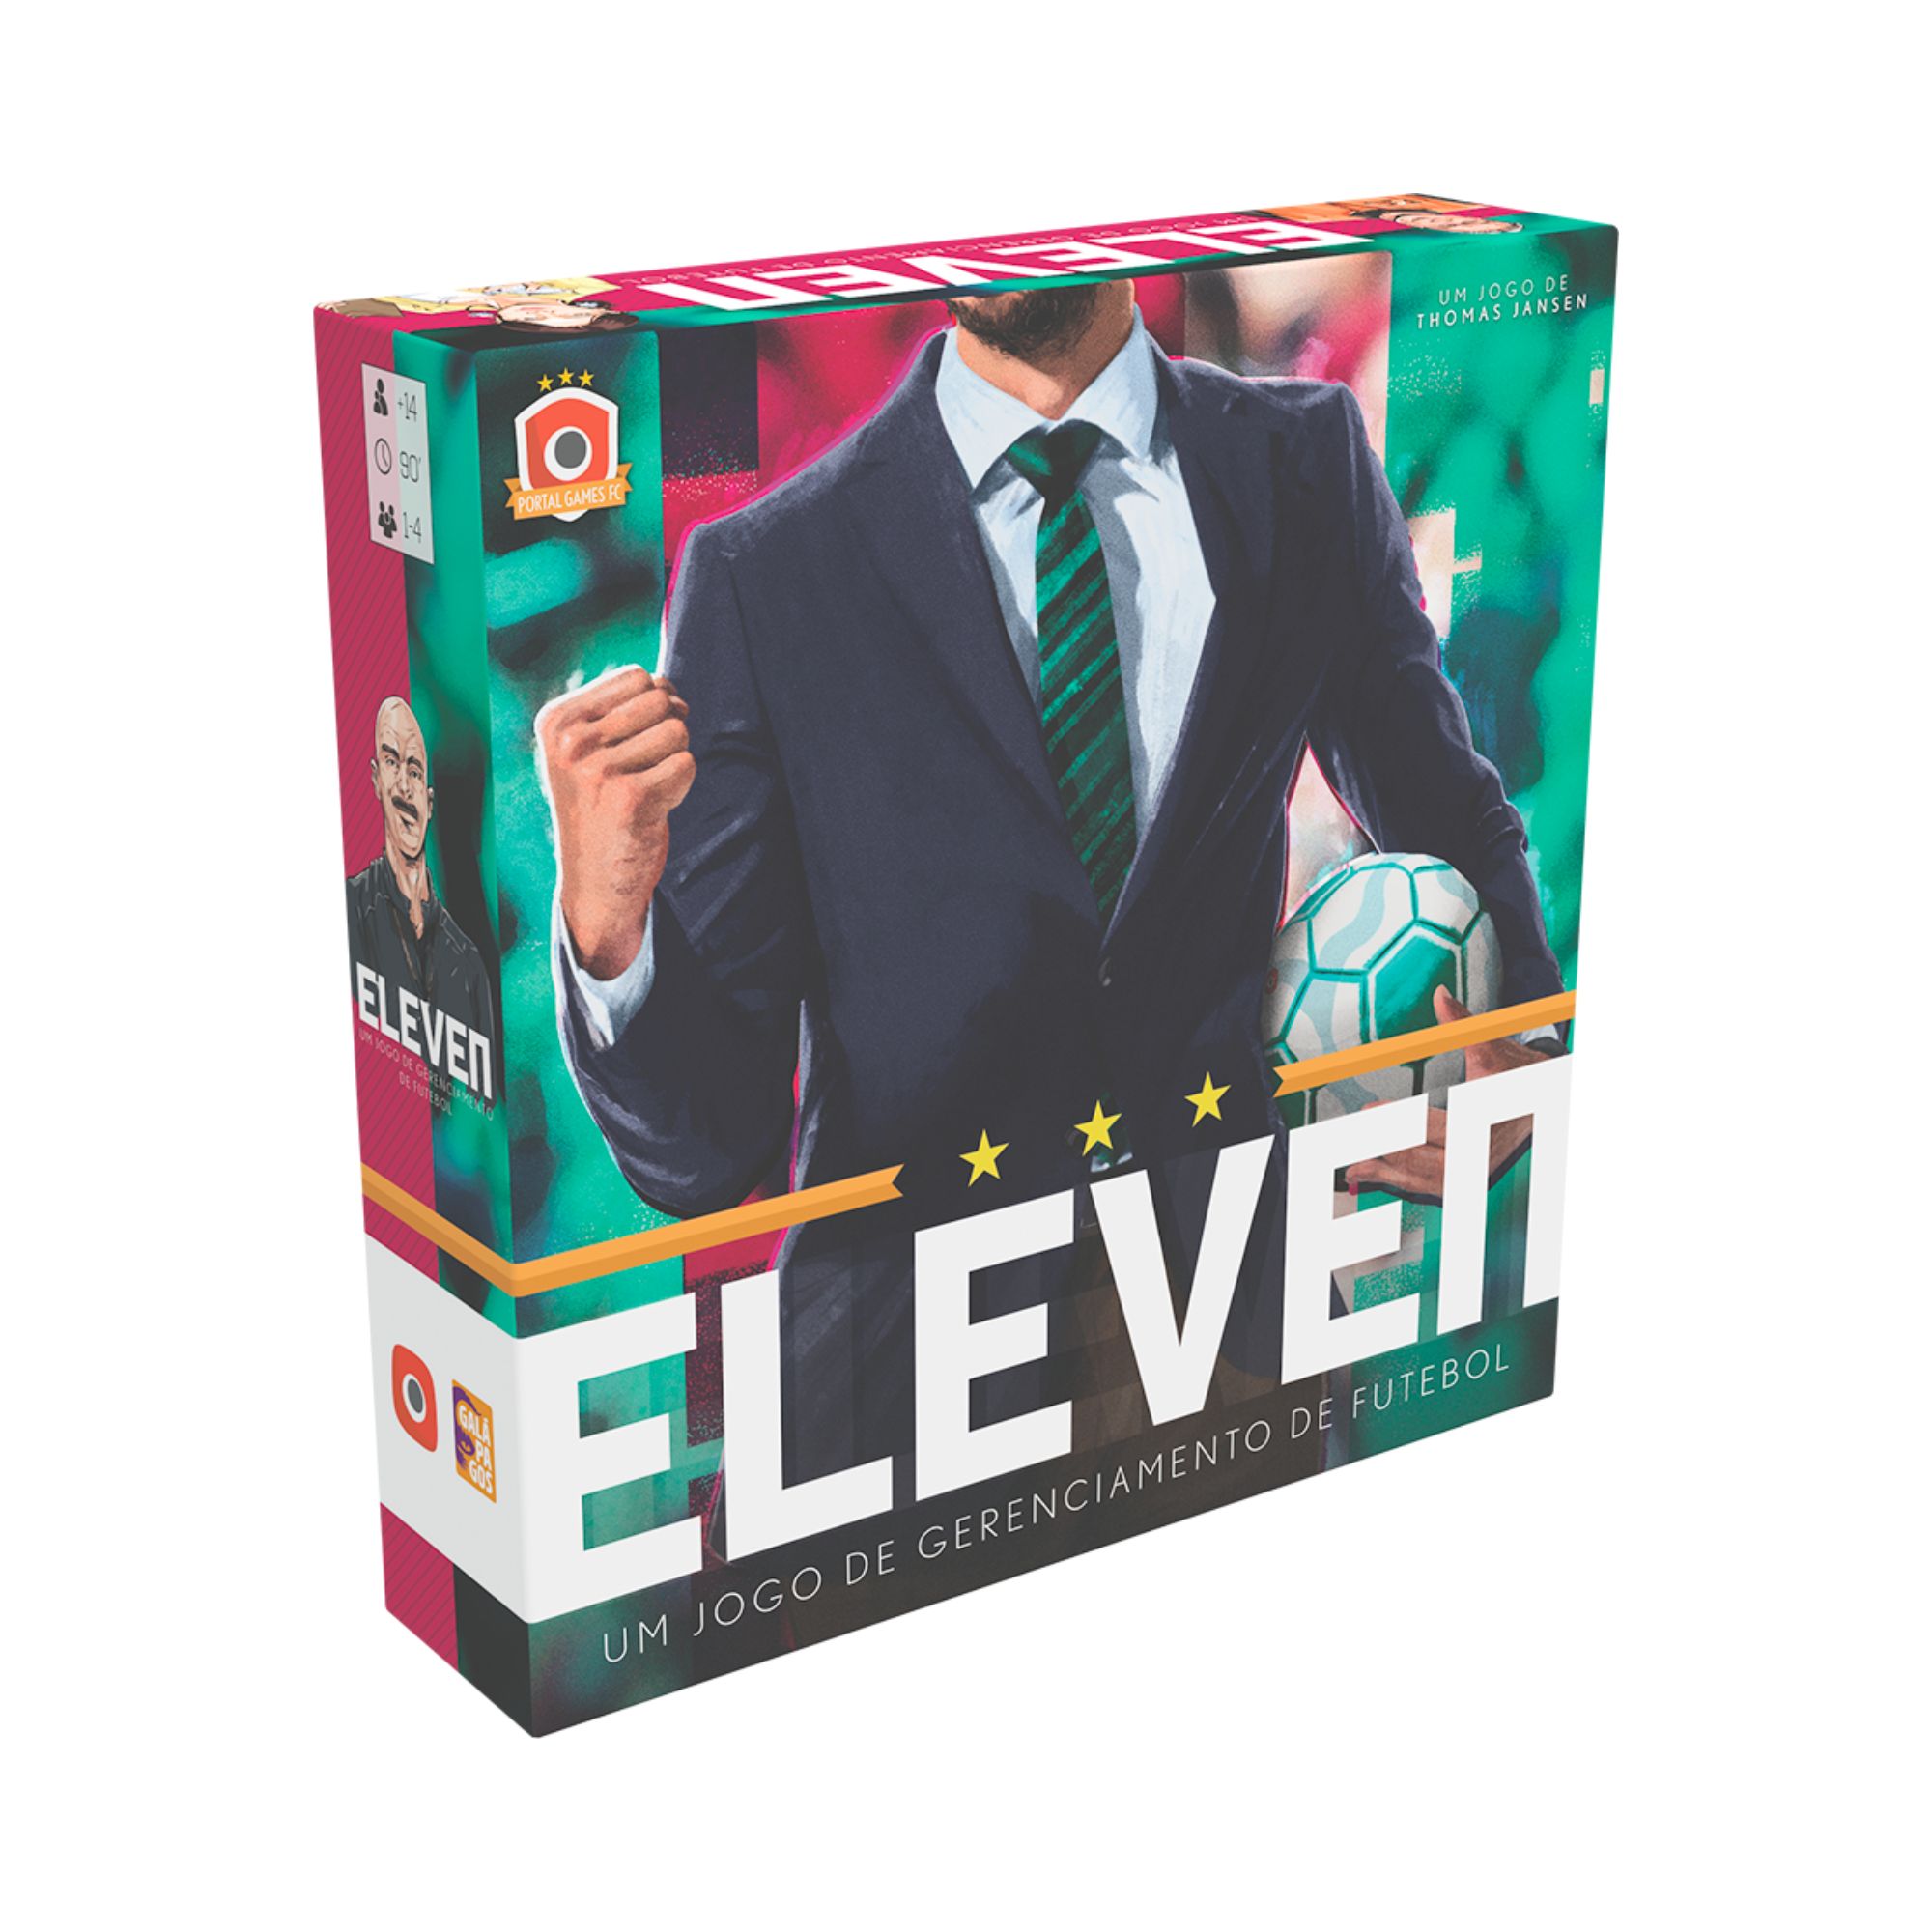 Jogo Eleven: Um Jogo de Gerenciamento de Futebol